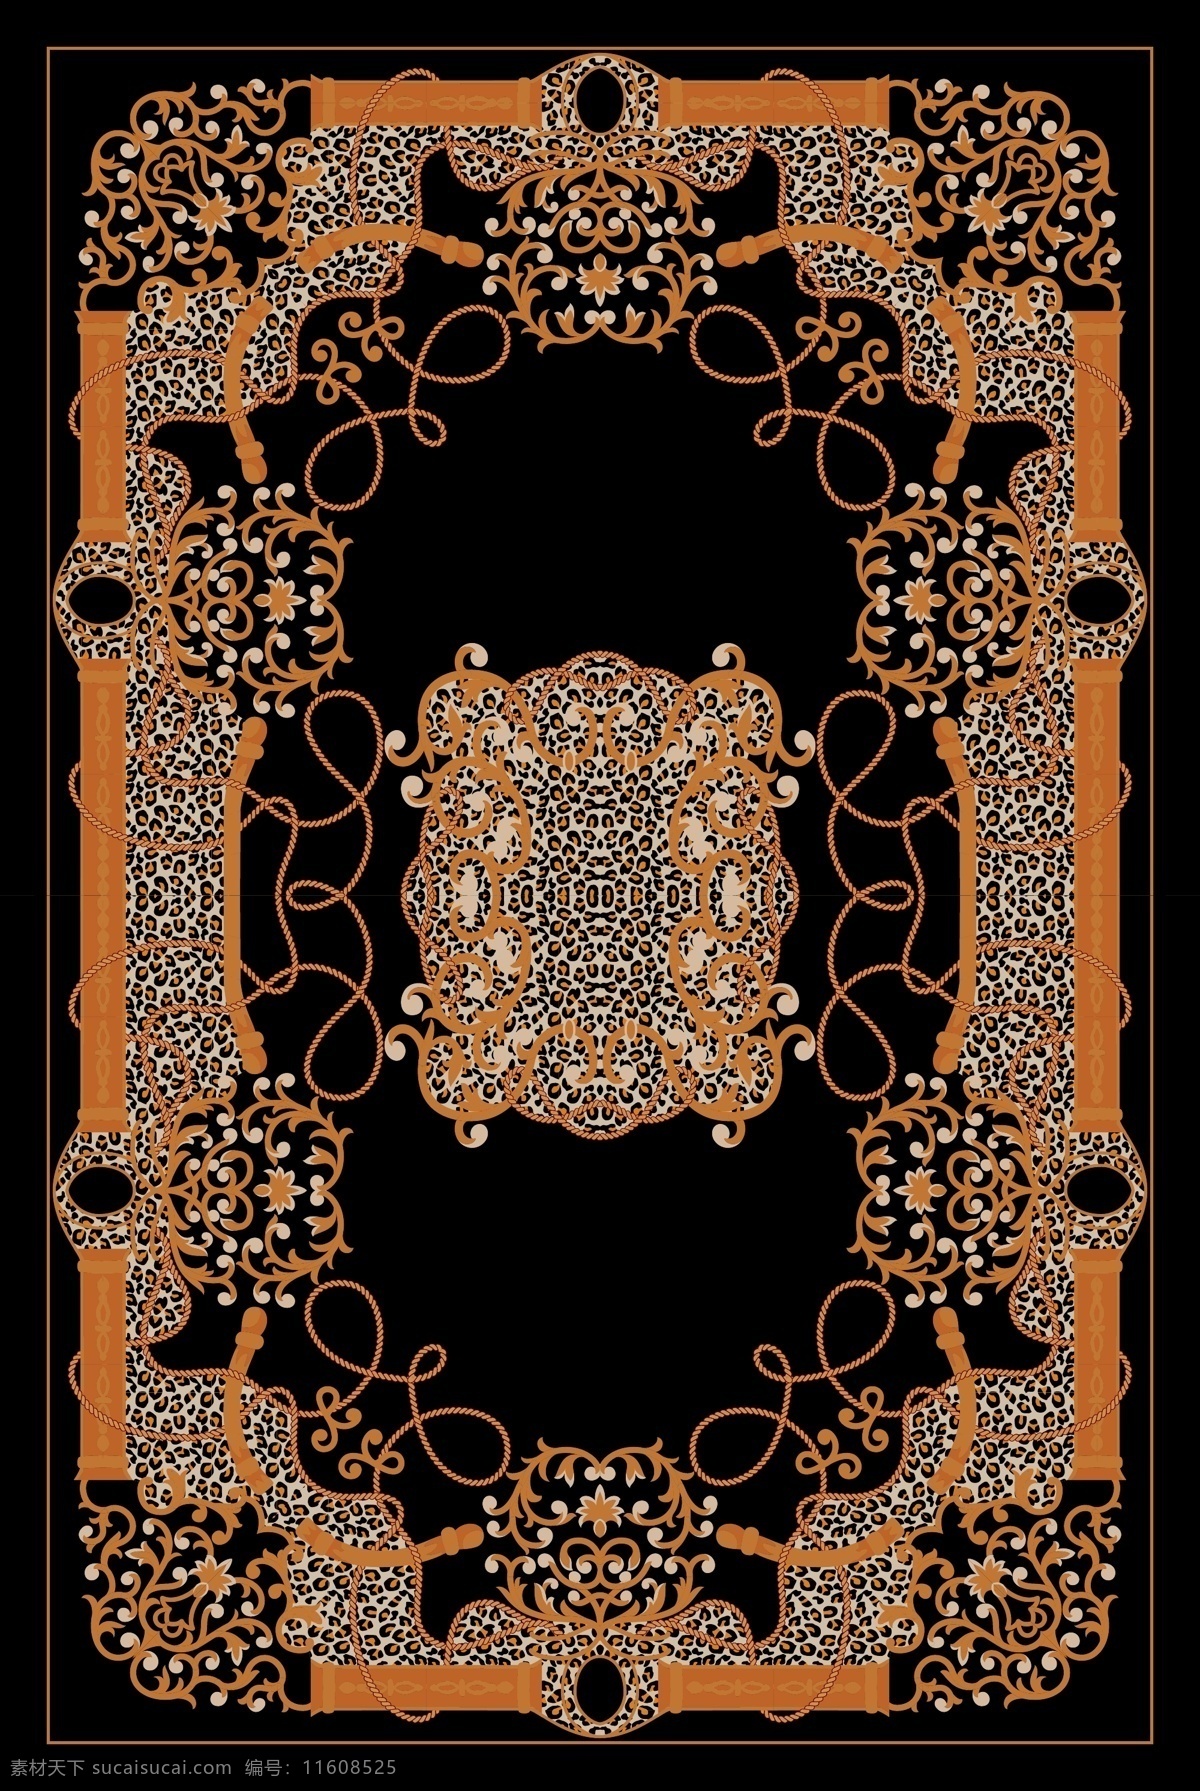 地毯图案 地毯设计 底纹设计 底纹 边花 地毯 抽象图案 外国图案 花纹花边 底纹边框 矢量